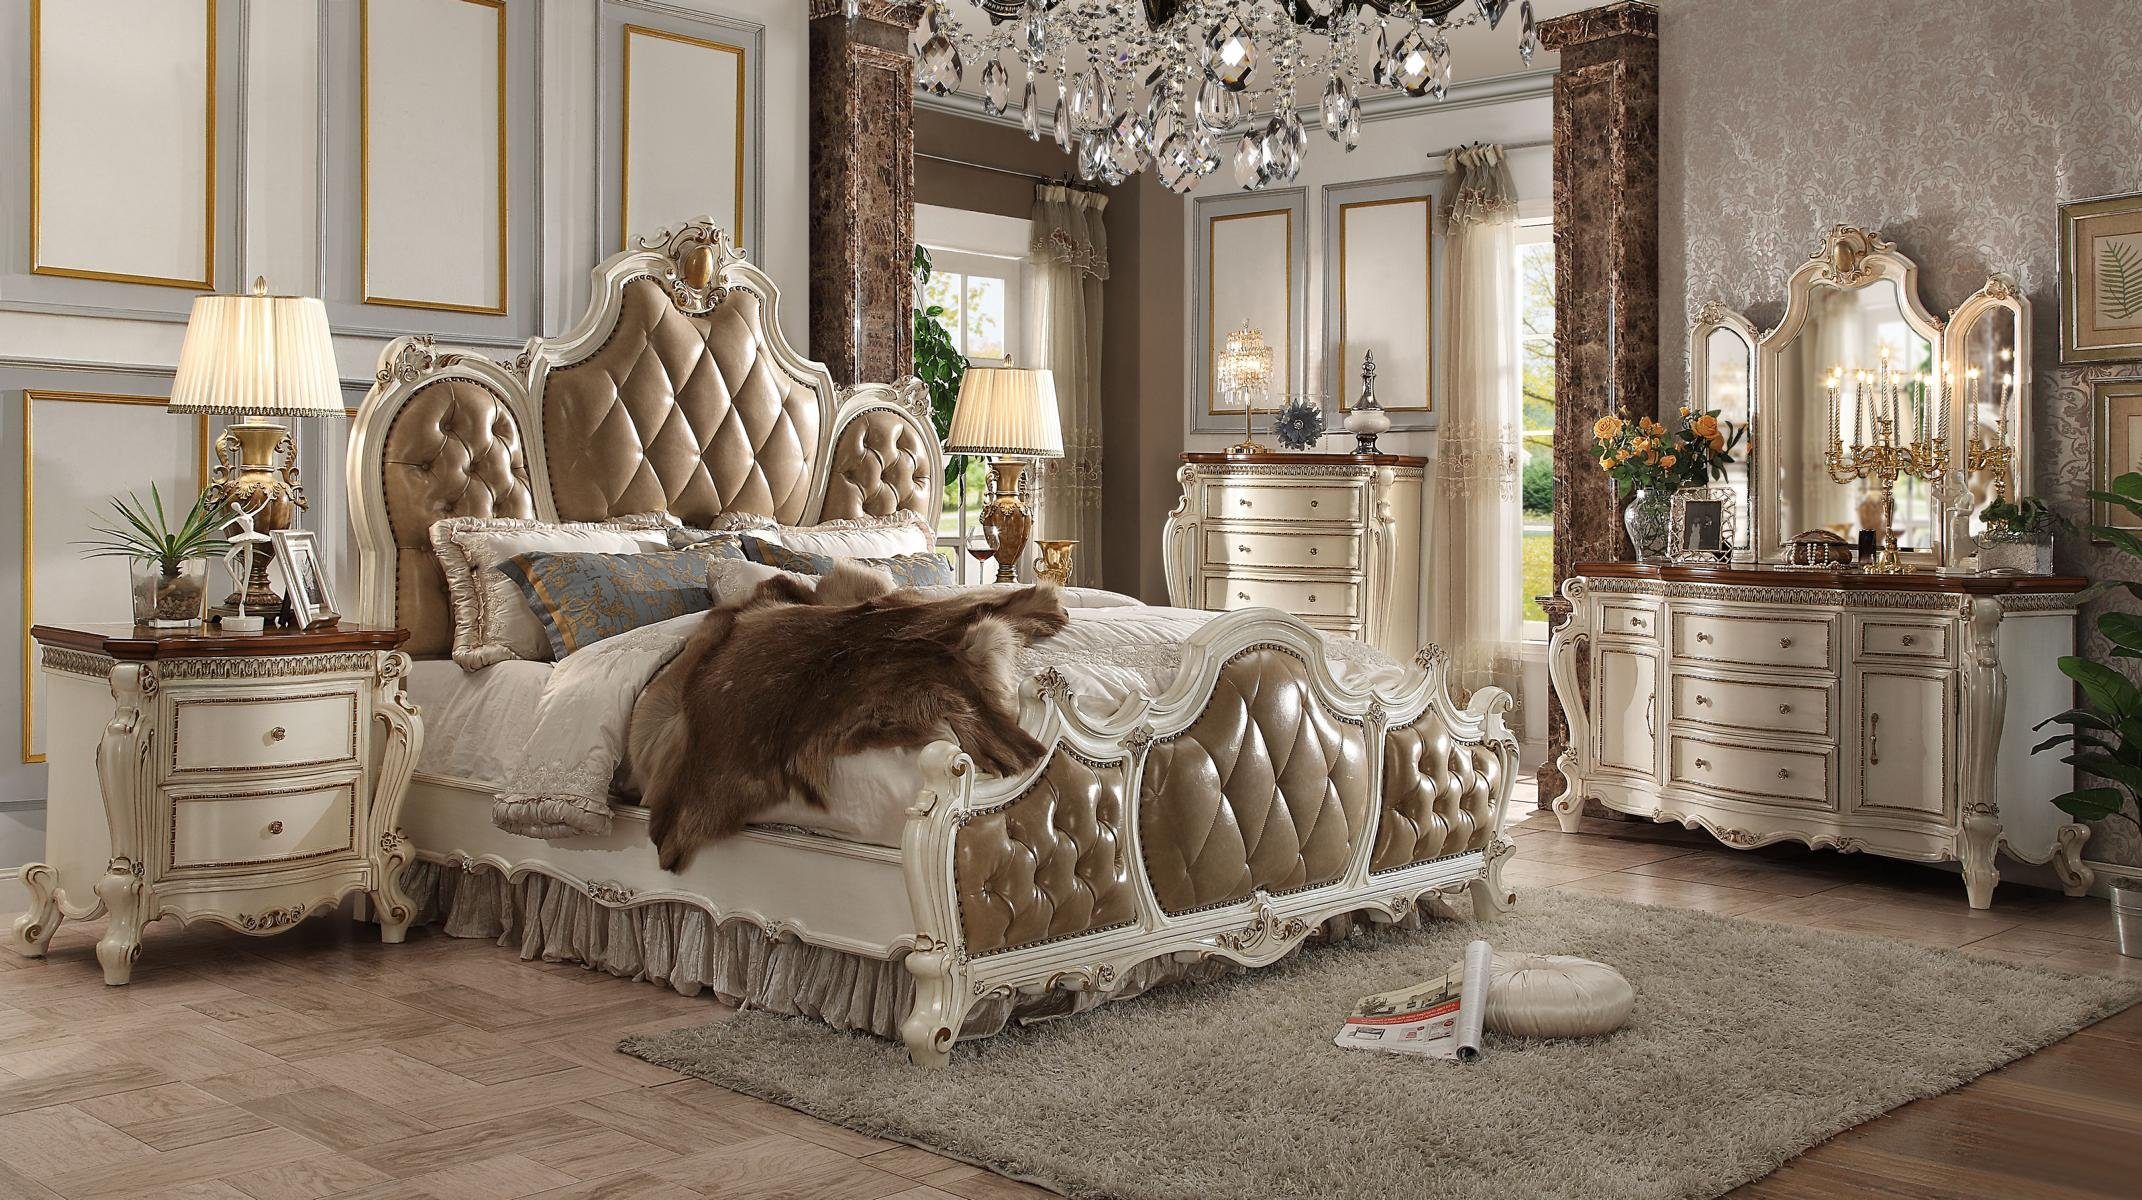 Palast Hotel Betten Luxus Königliches Bett, Bett Leder Chesterfield JVmoebel